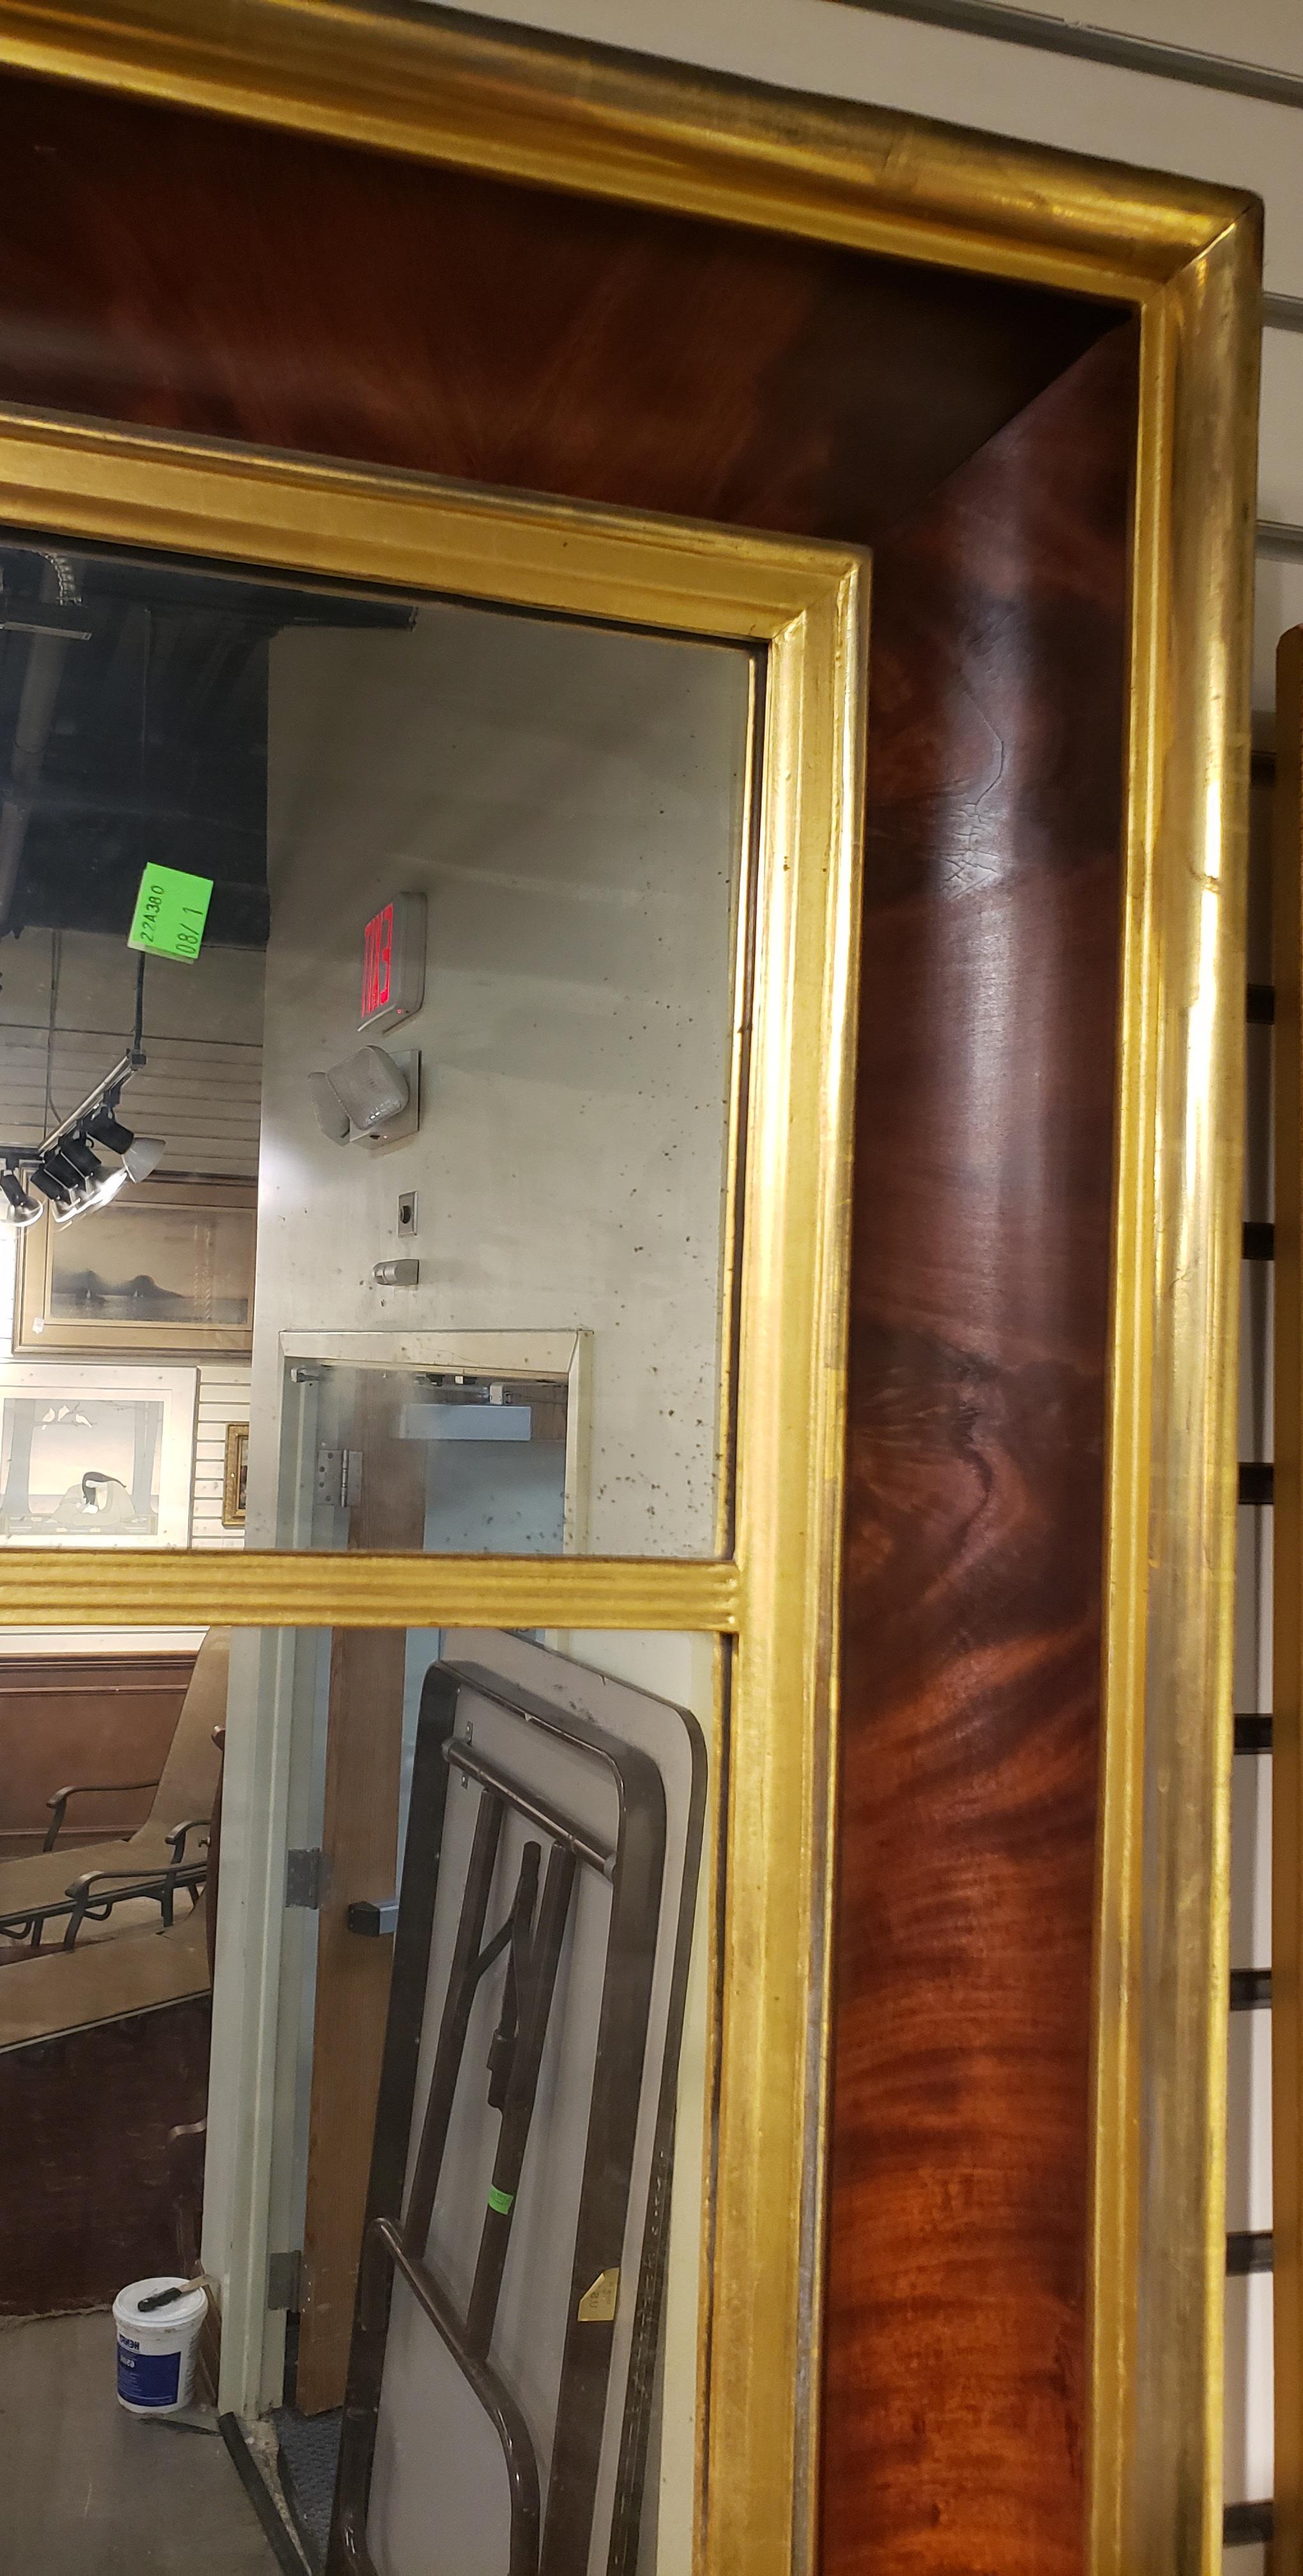 miroir trumeau Empire américain du 19e siècle en acajou avec cadre en flammes dorées. Beau miroir avec patine.
Mesure 22